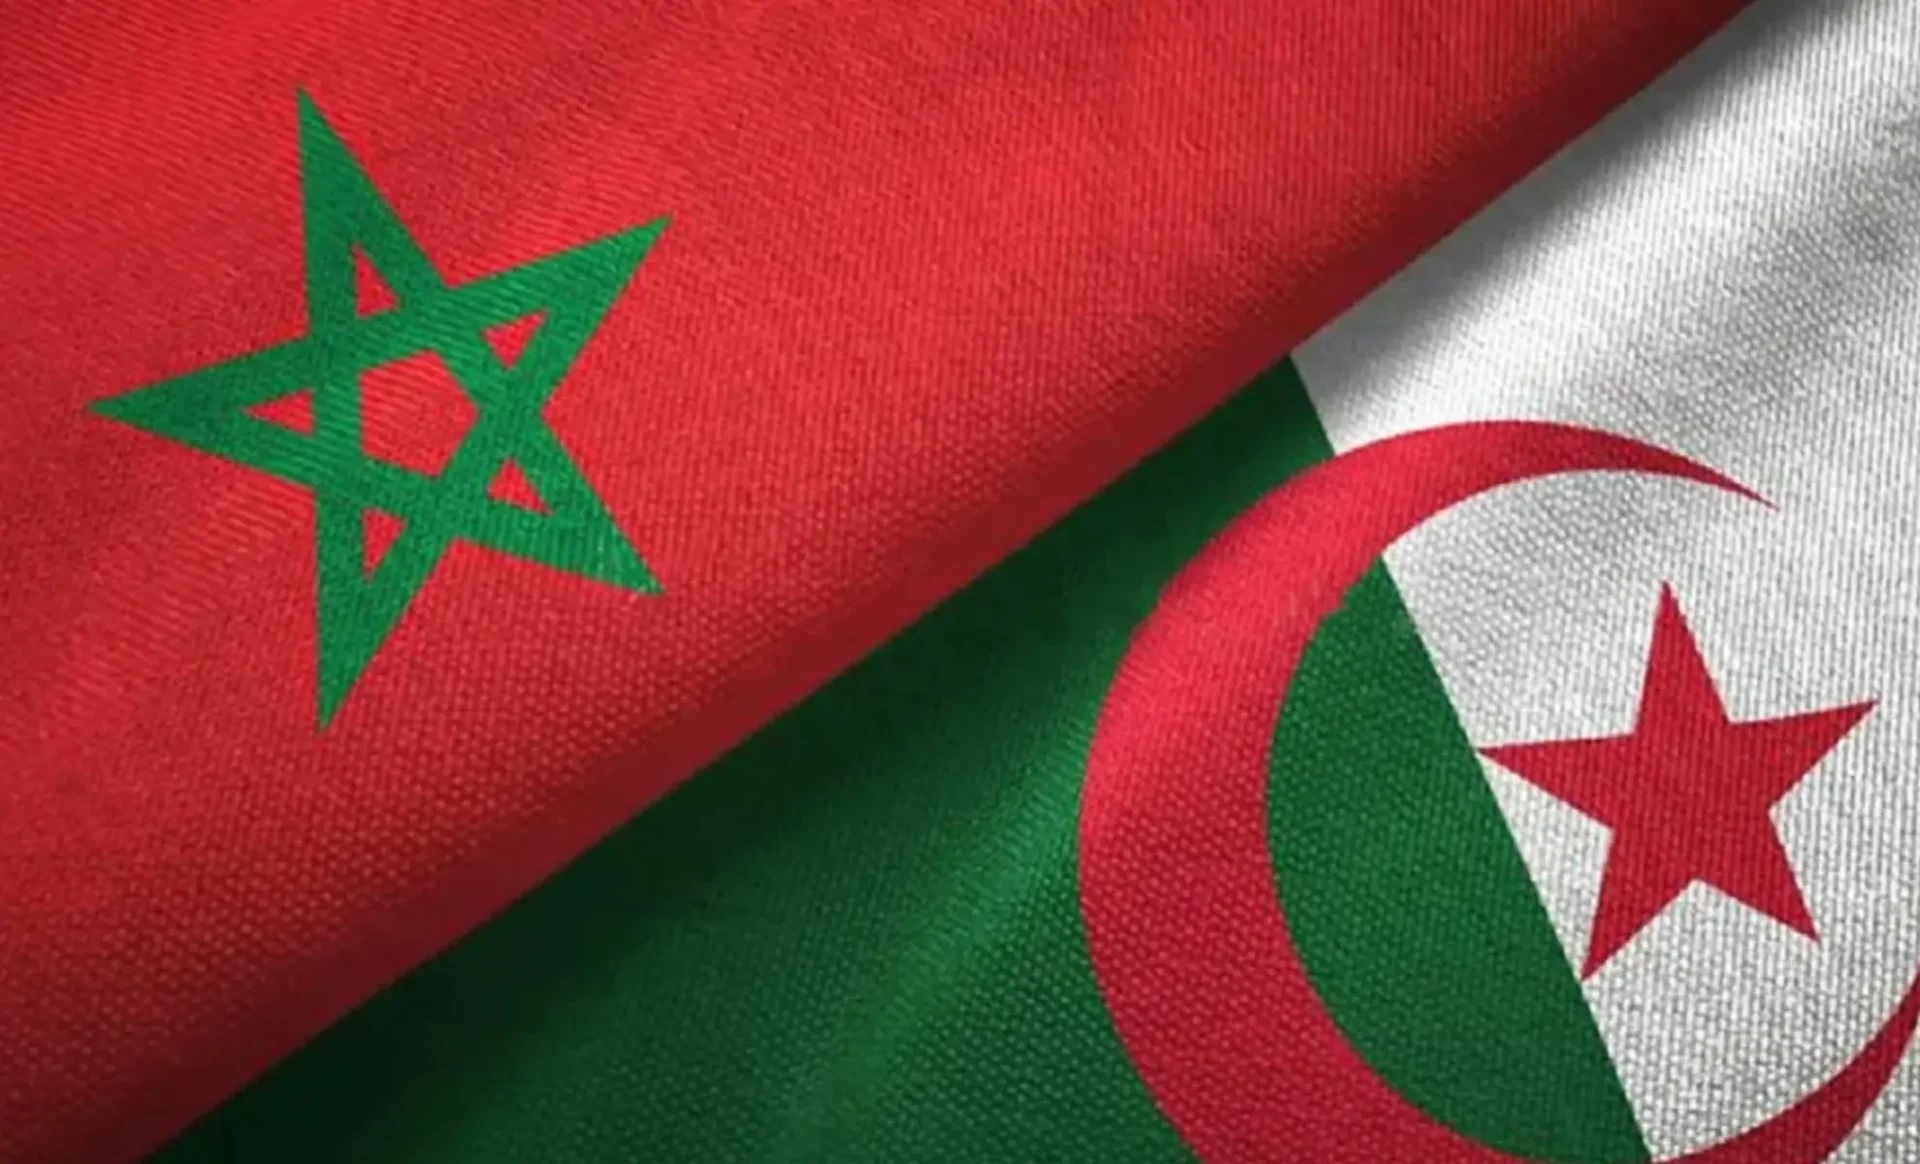 Tensions Algérie-Maroc : Querelle autour du zellige pendant la CAN, l'Algérie envisage une demande à l'UNESCO